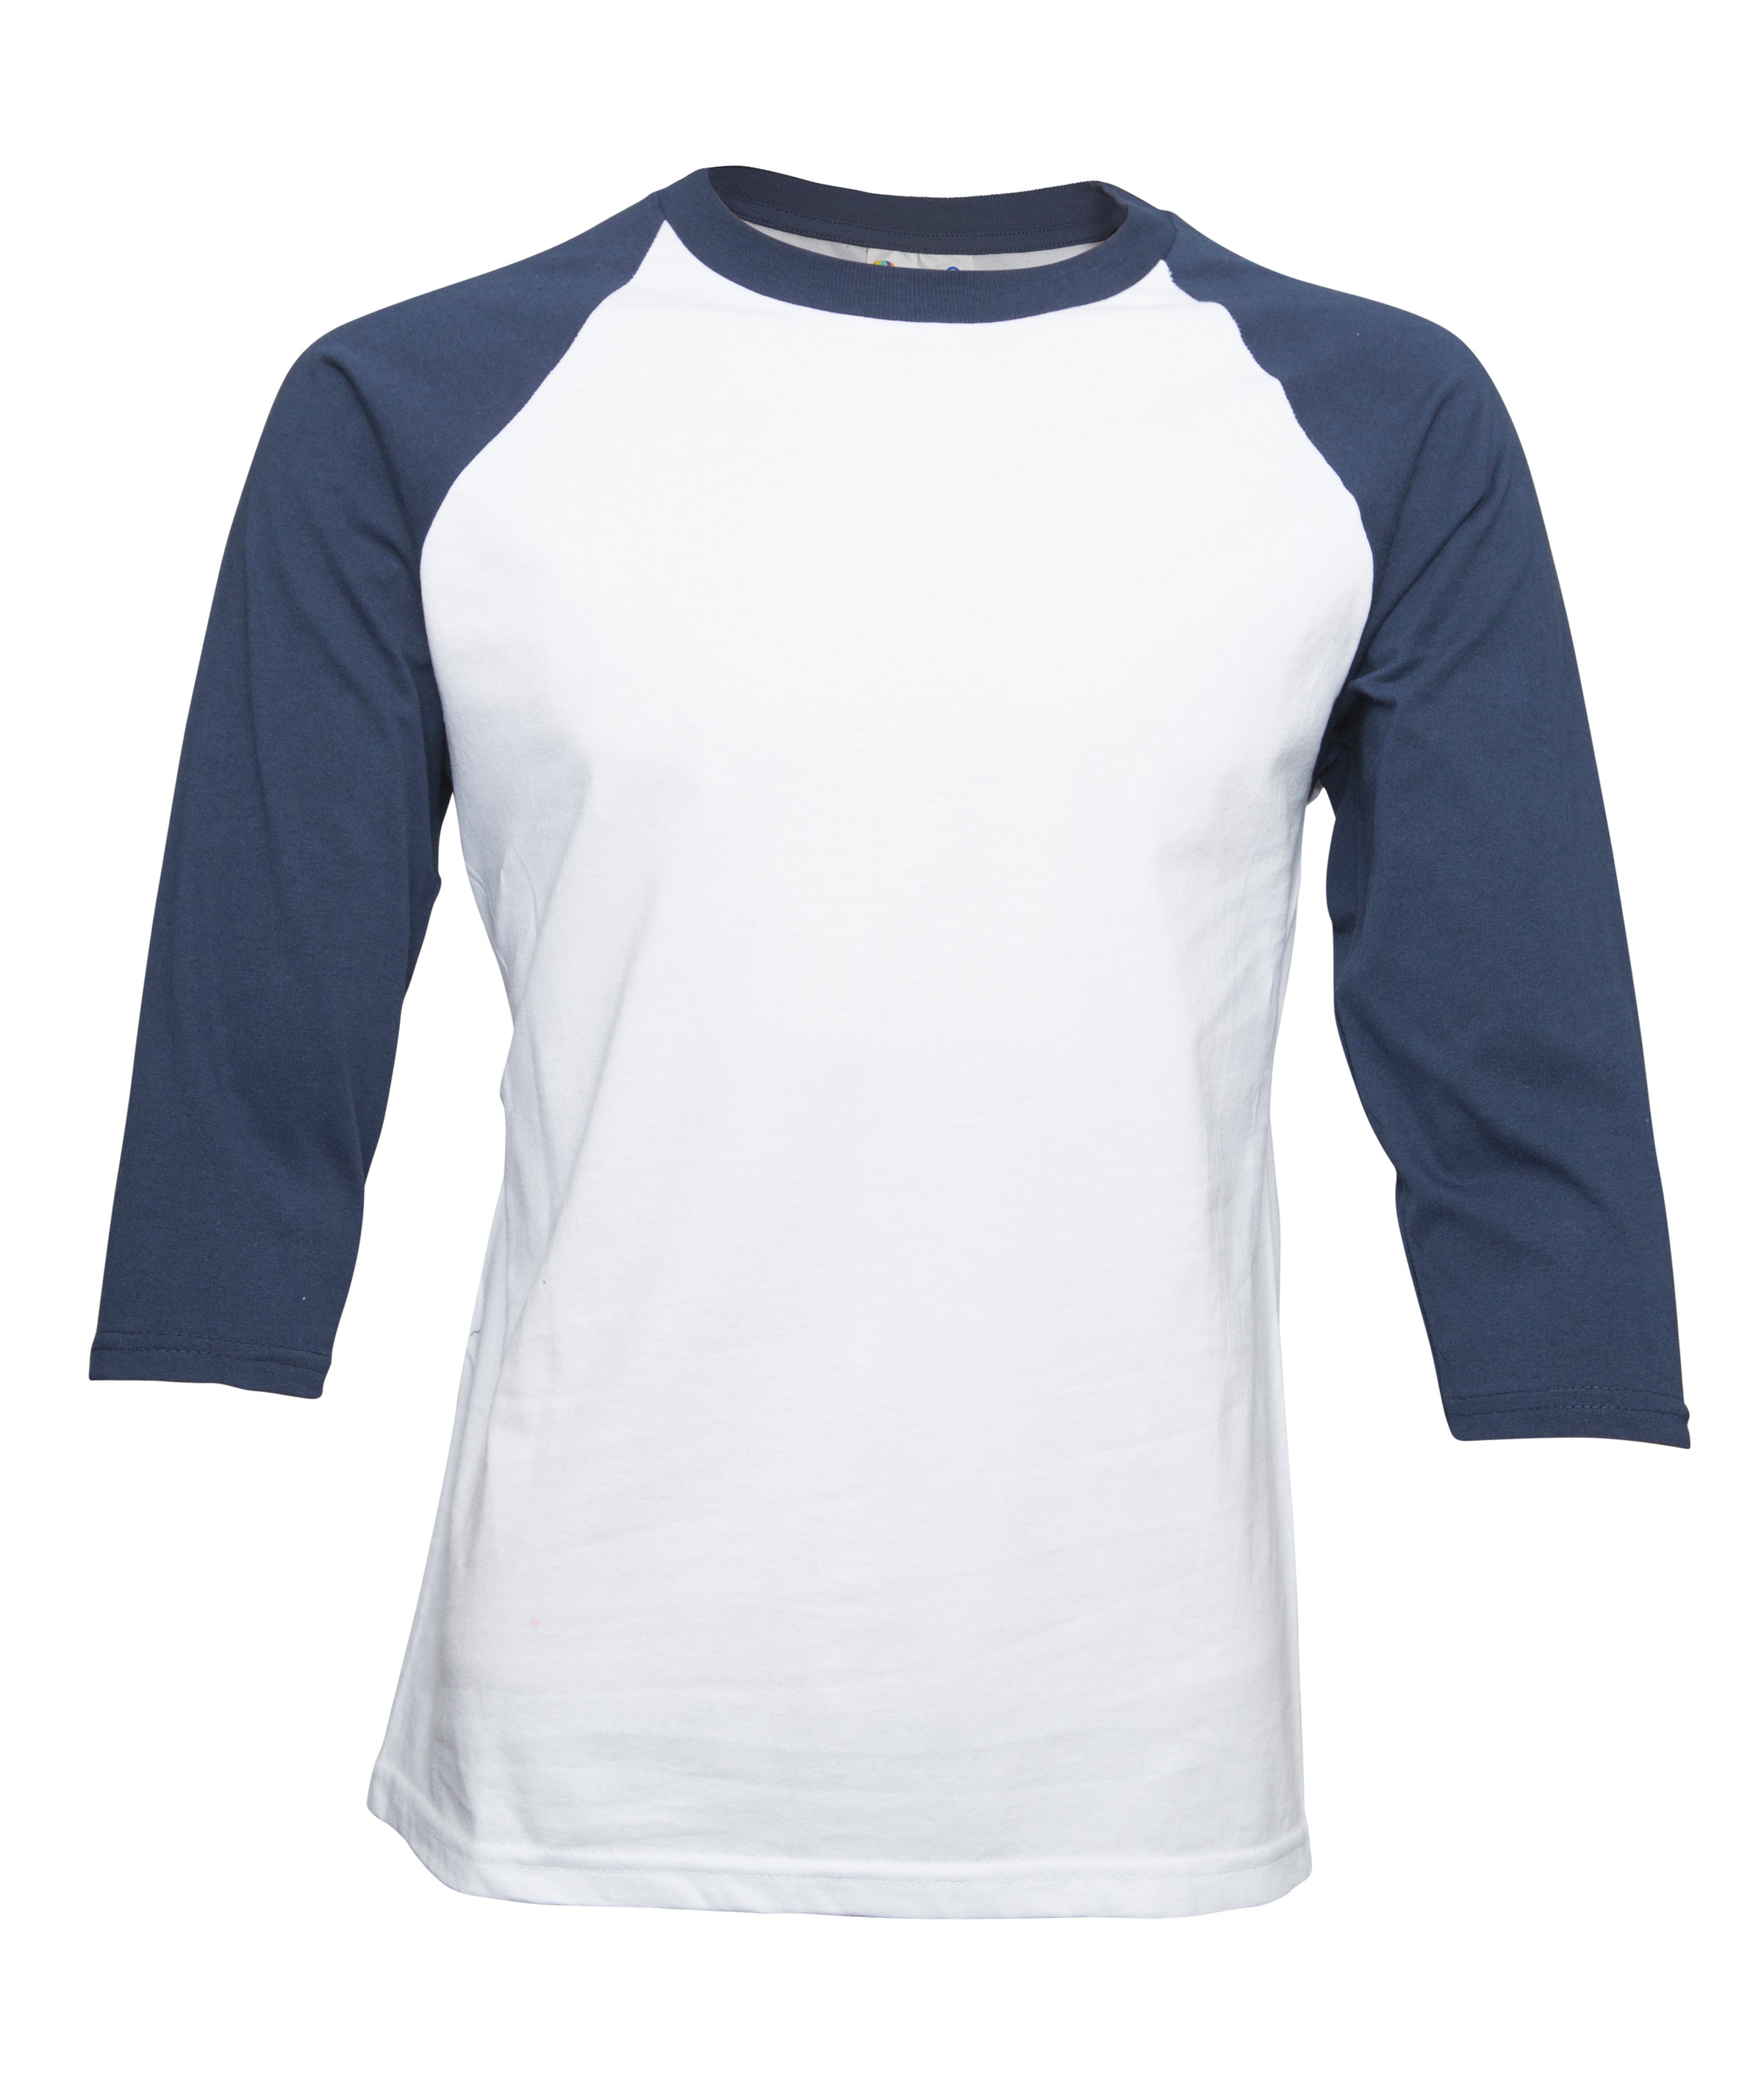 baseball undershirts 3 4 sleeve